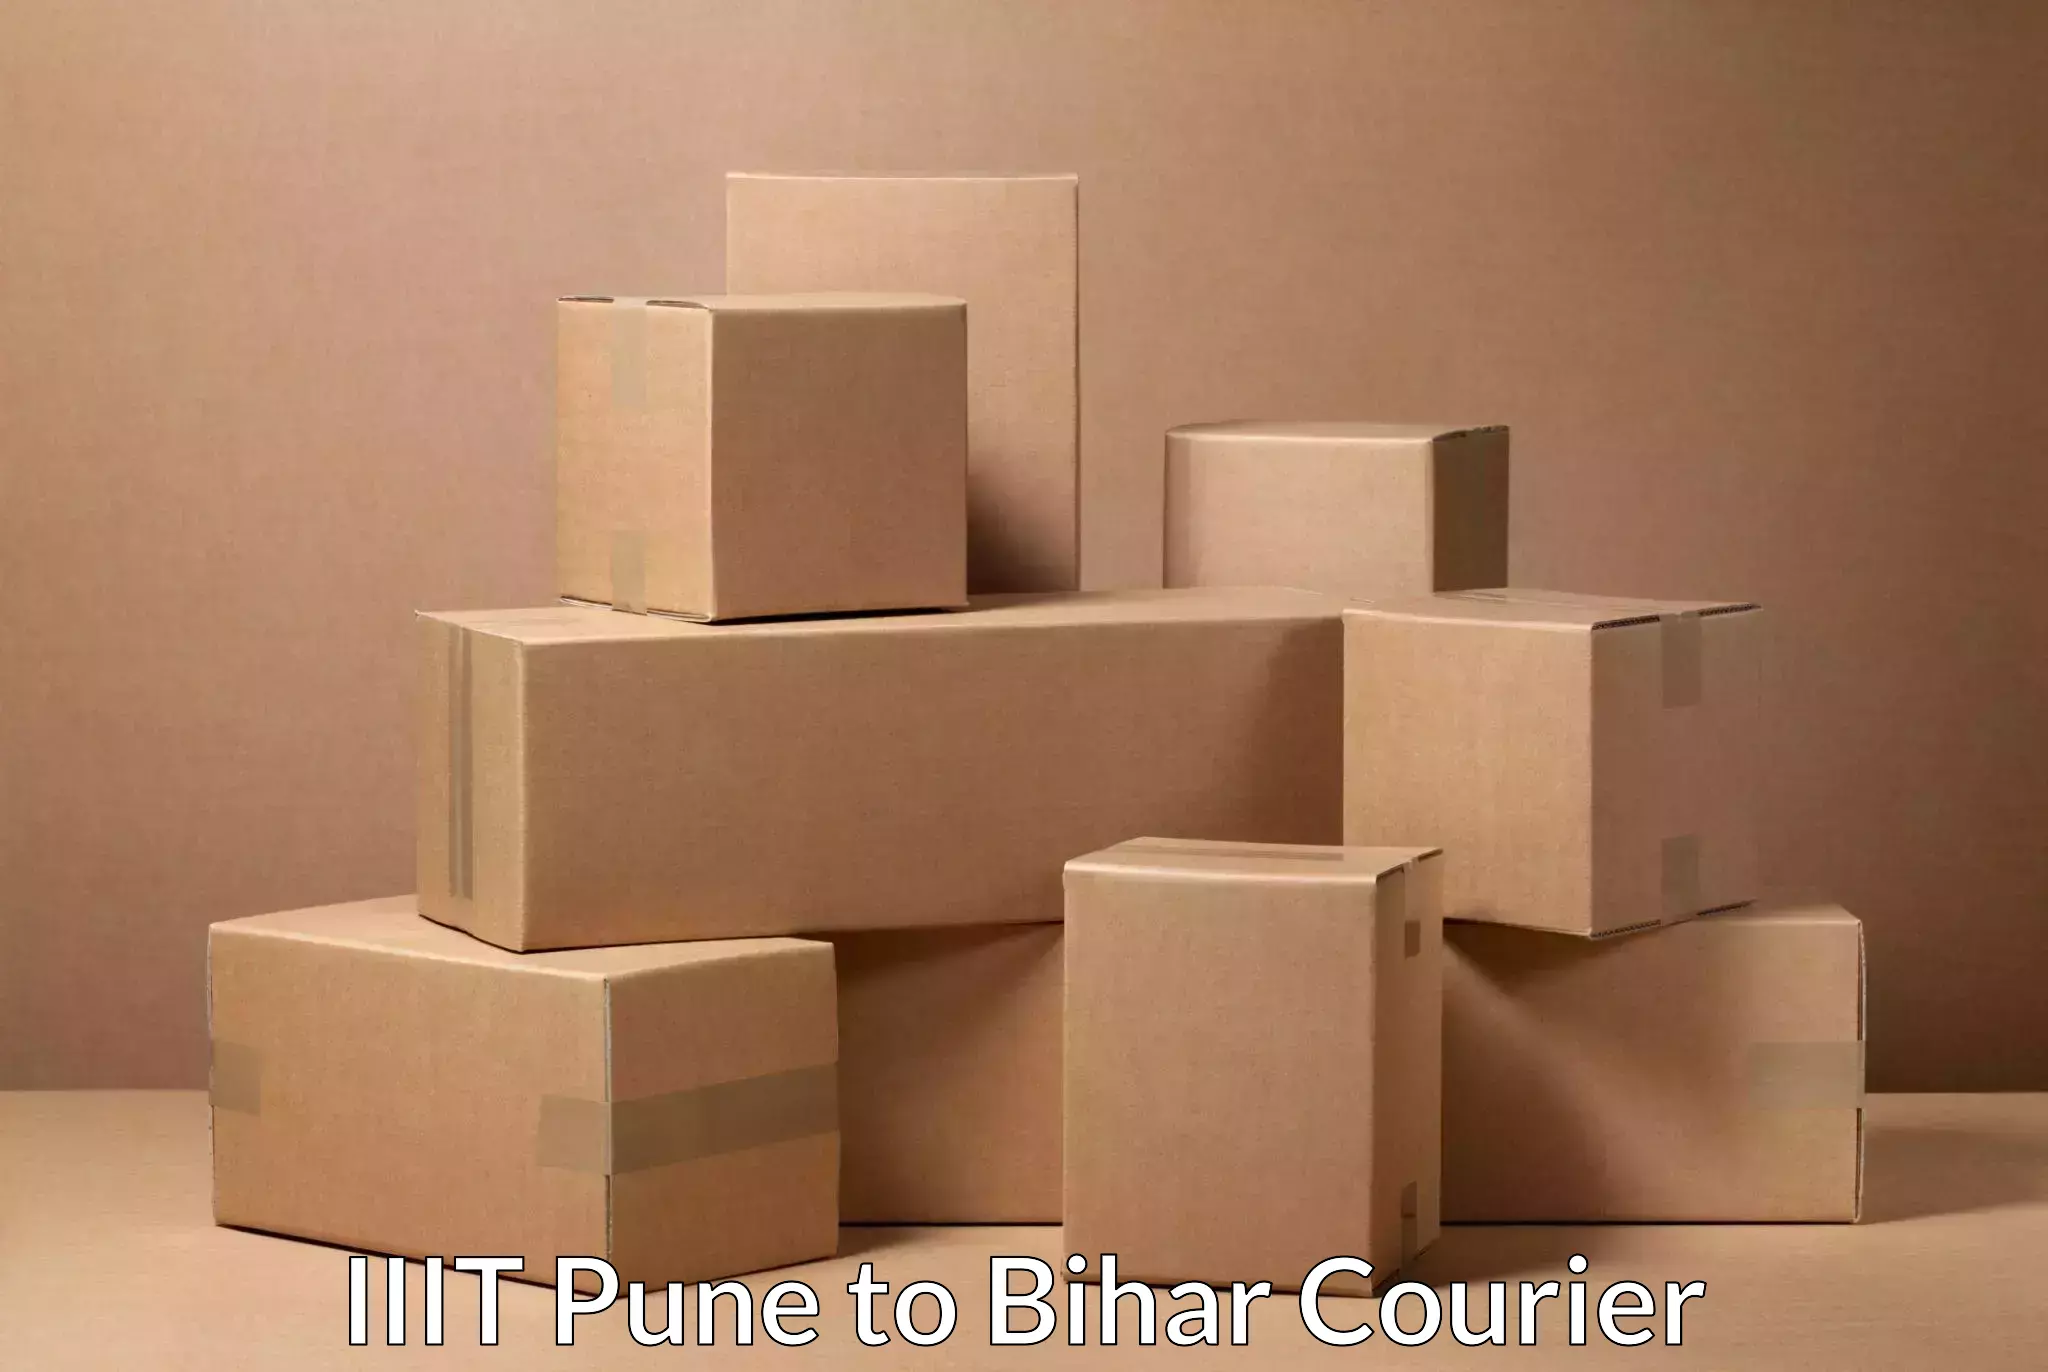 Efficient freight service IIIT Pune to Bihar